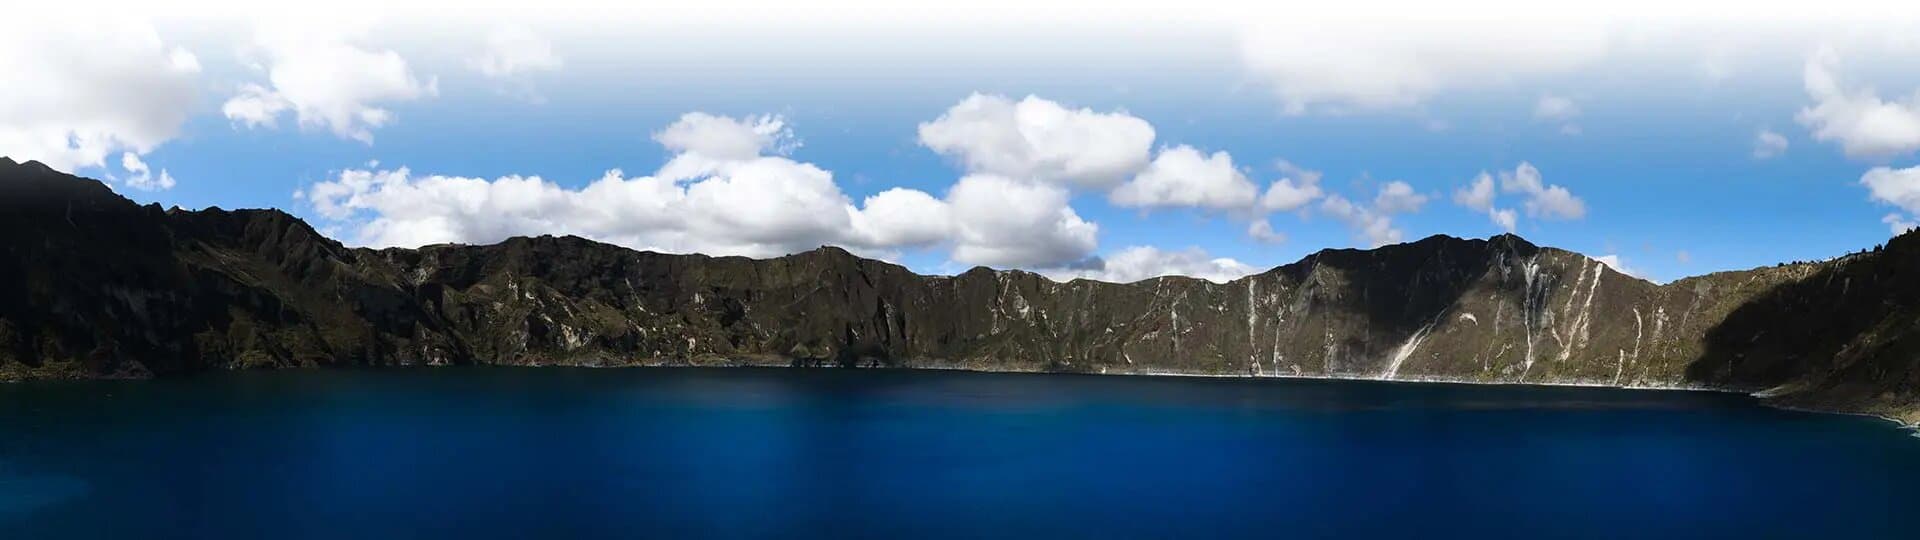 lago quilotoa ecuador